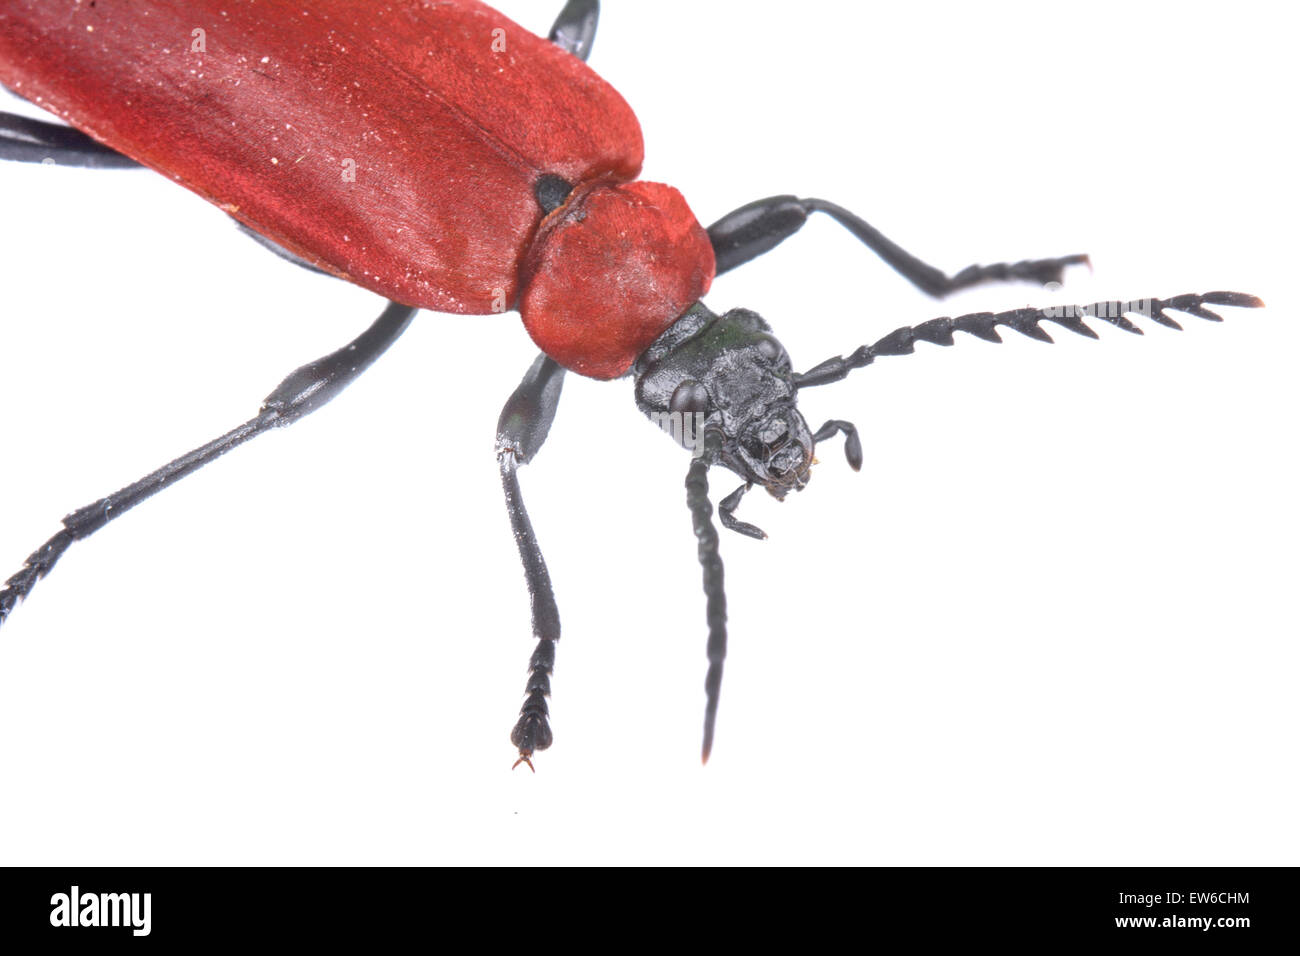 Schöne detaillierte Sicht auf roten Käfer auf dem weißen Hintergrund. Stockfoto